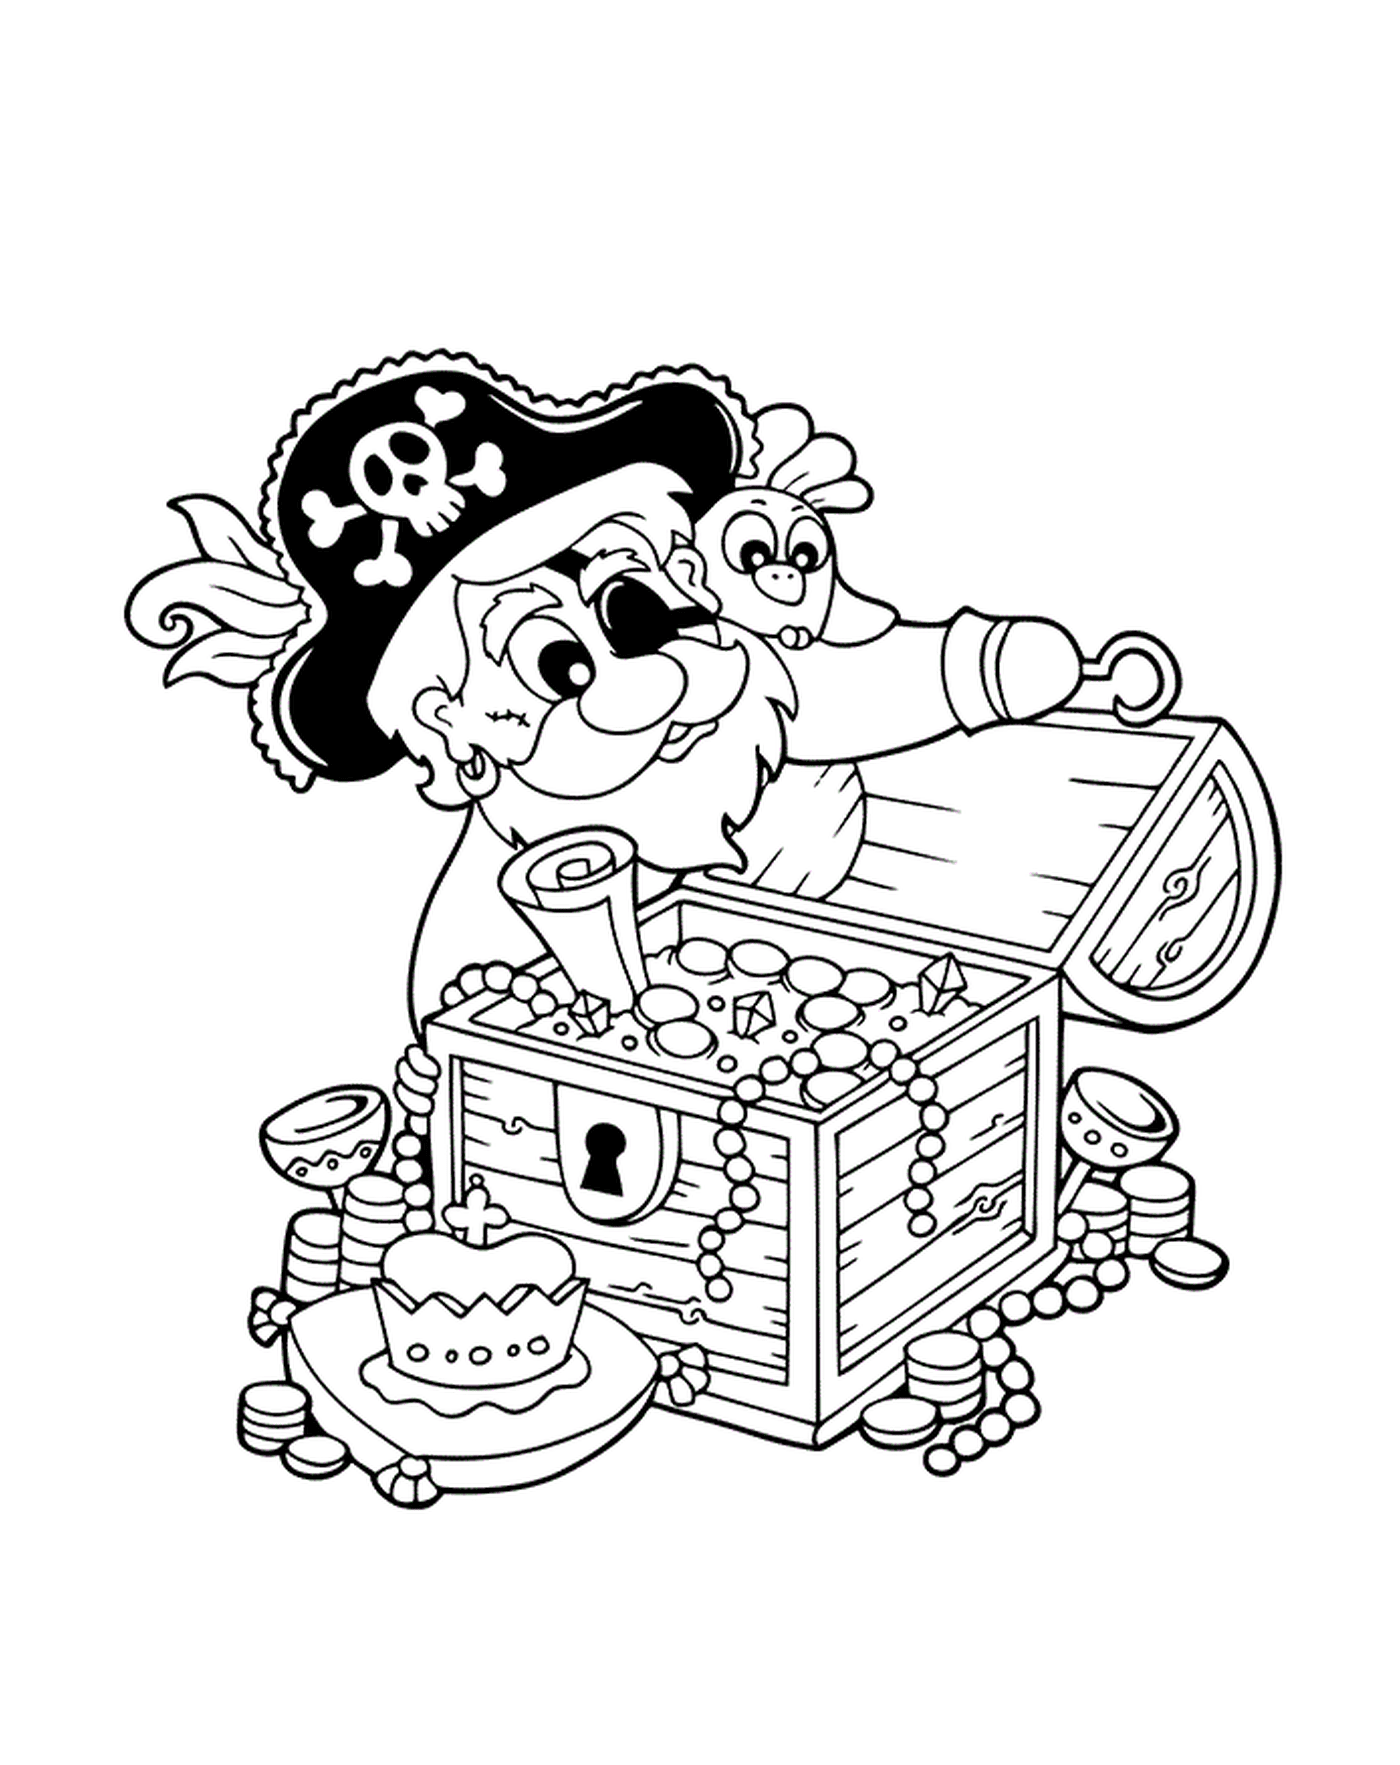  Pirate opens the treasure 